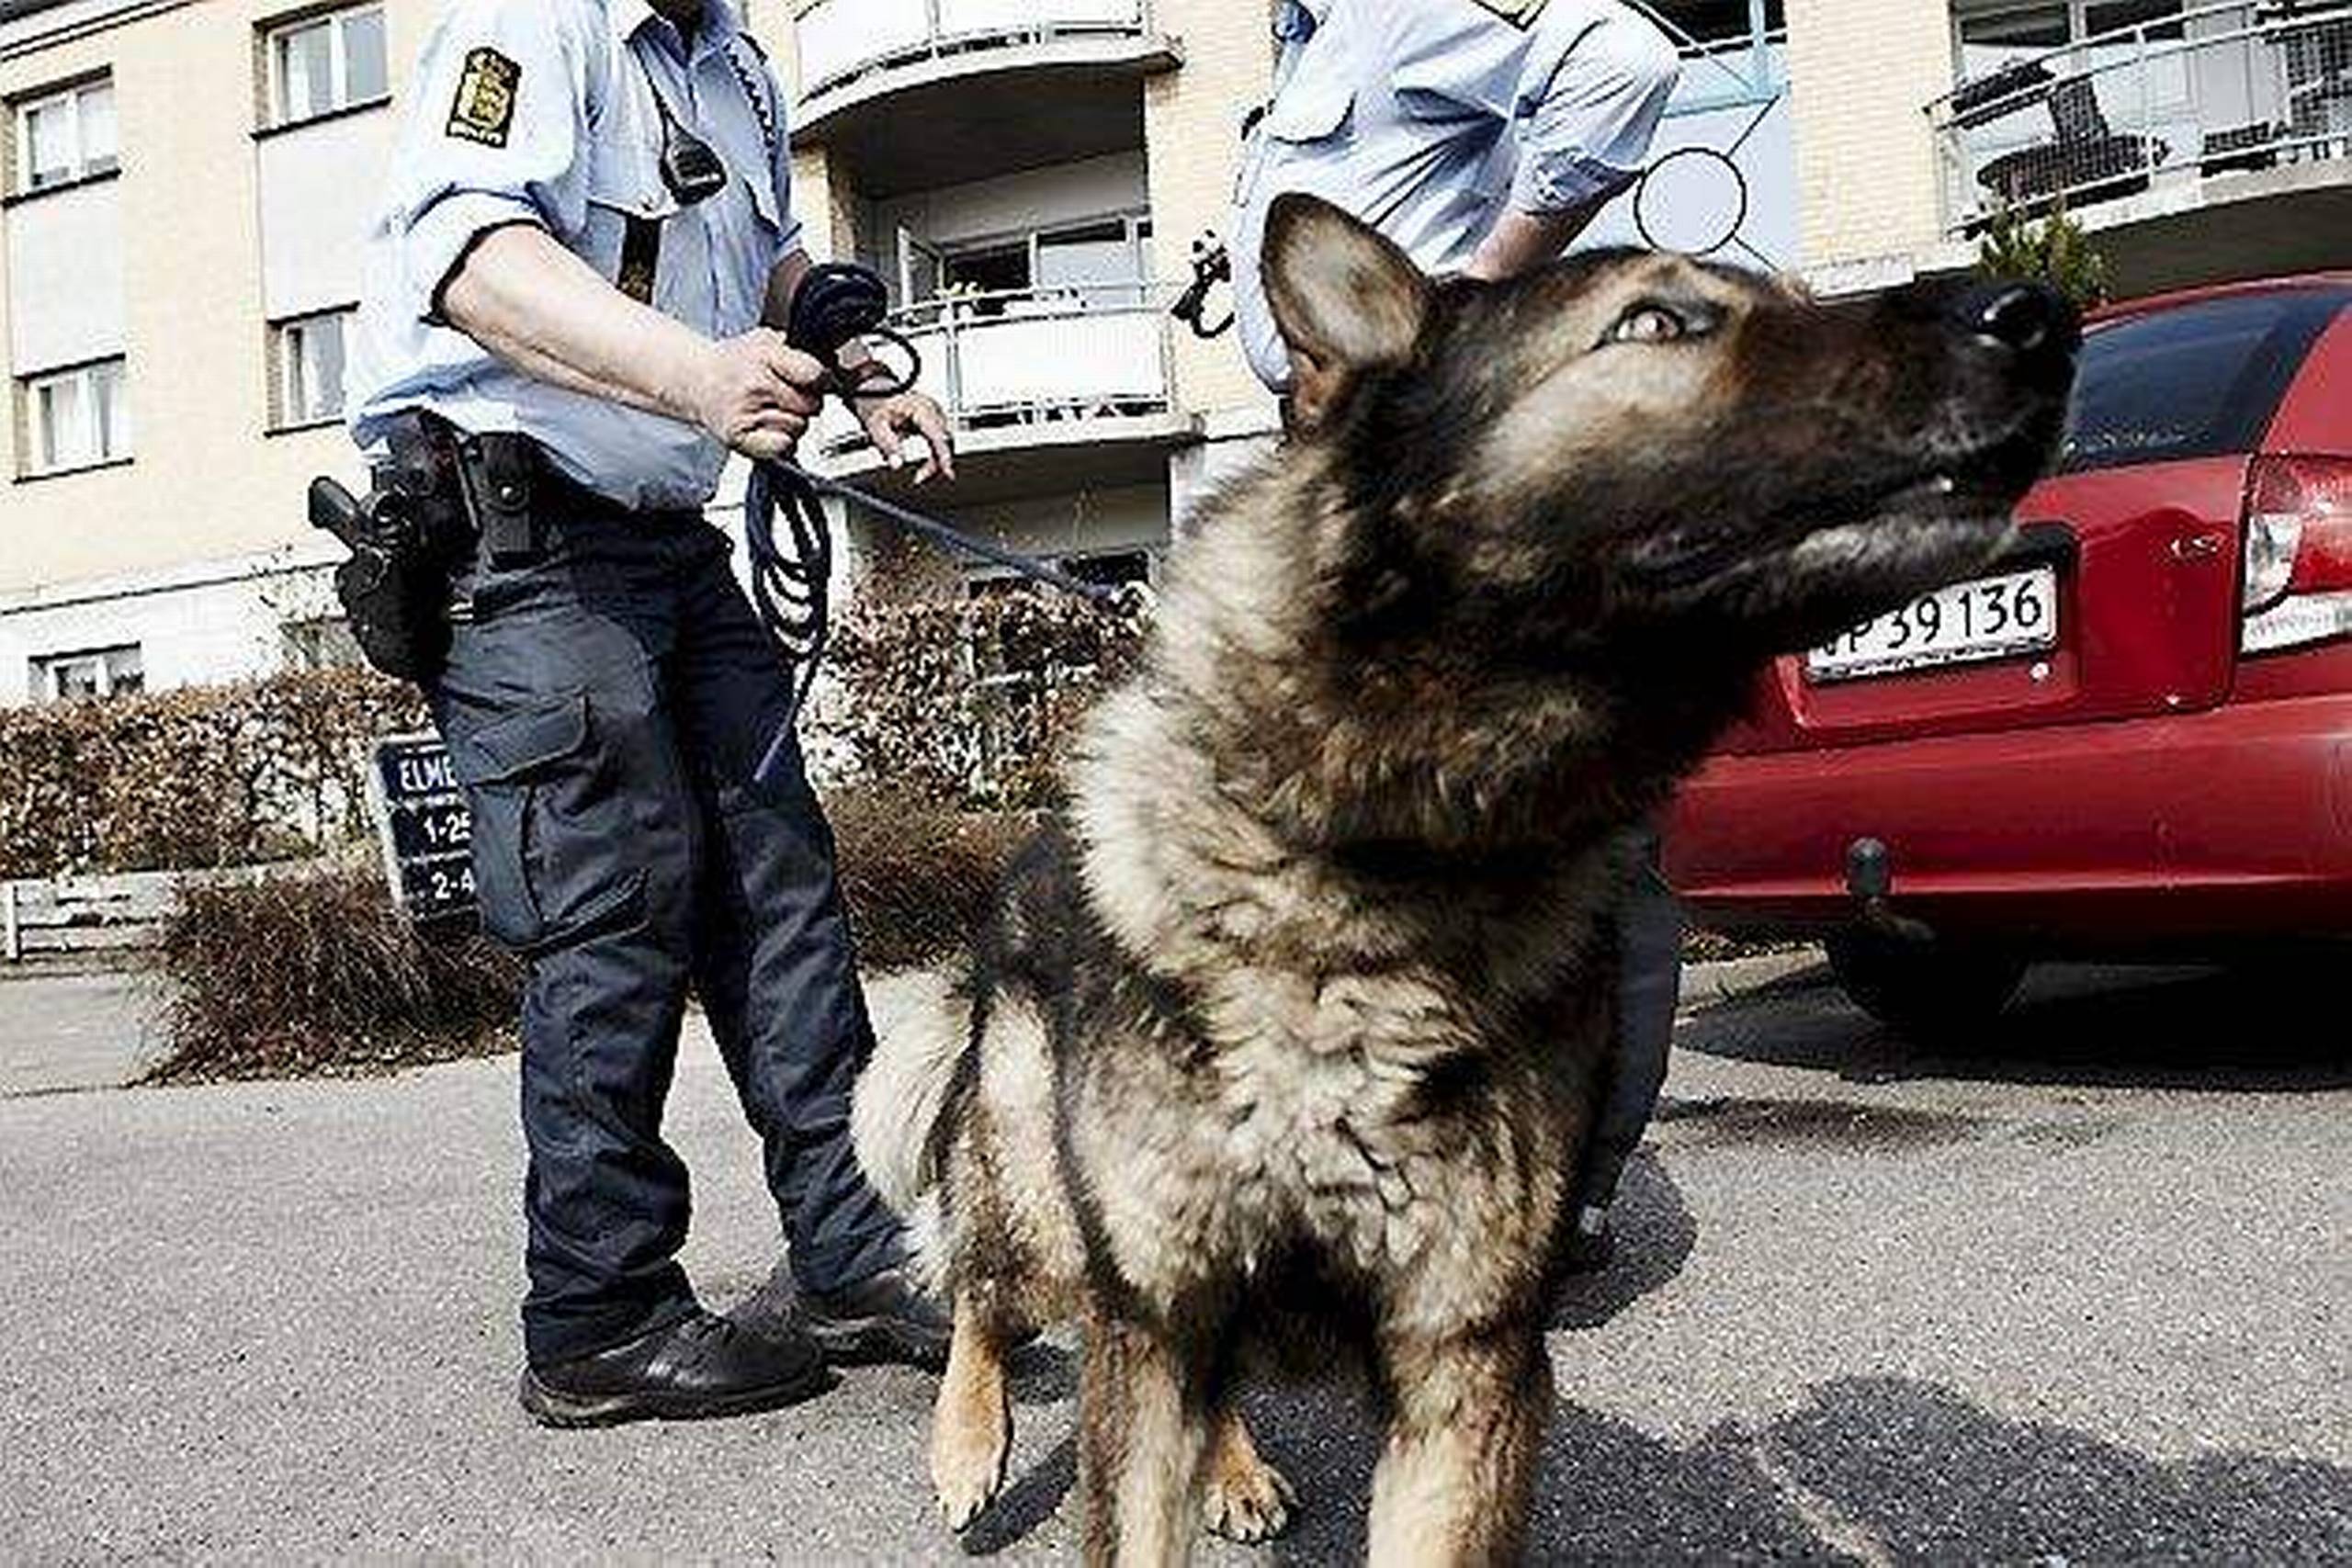 Politiet blev i nat sendt ud til en virksomhed på Nydamsvej i Hørning på grund af indbrud. Umiddelbart efter blev to mænd anholdt i sagen.